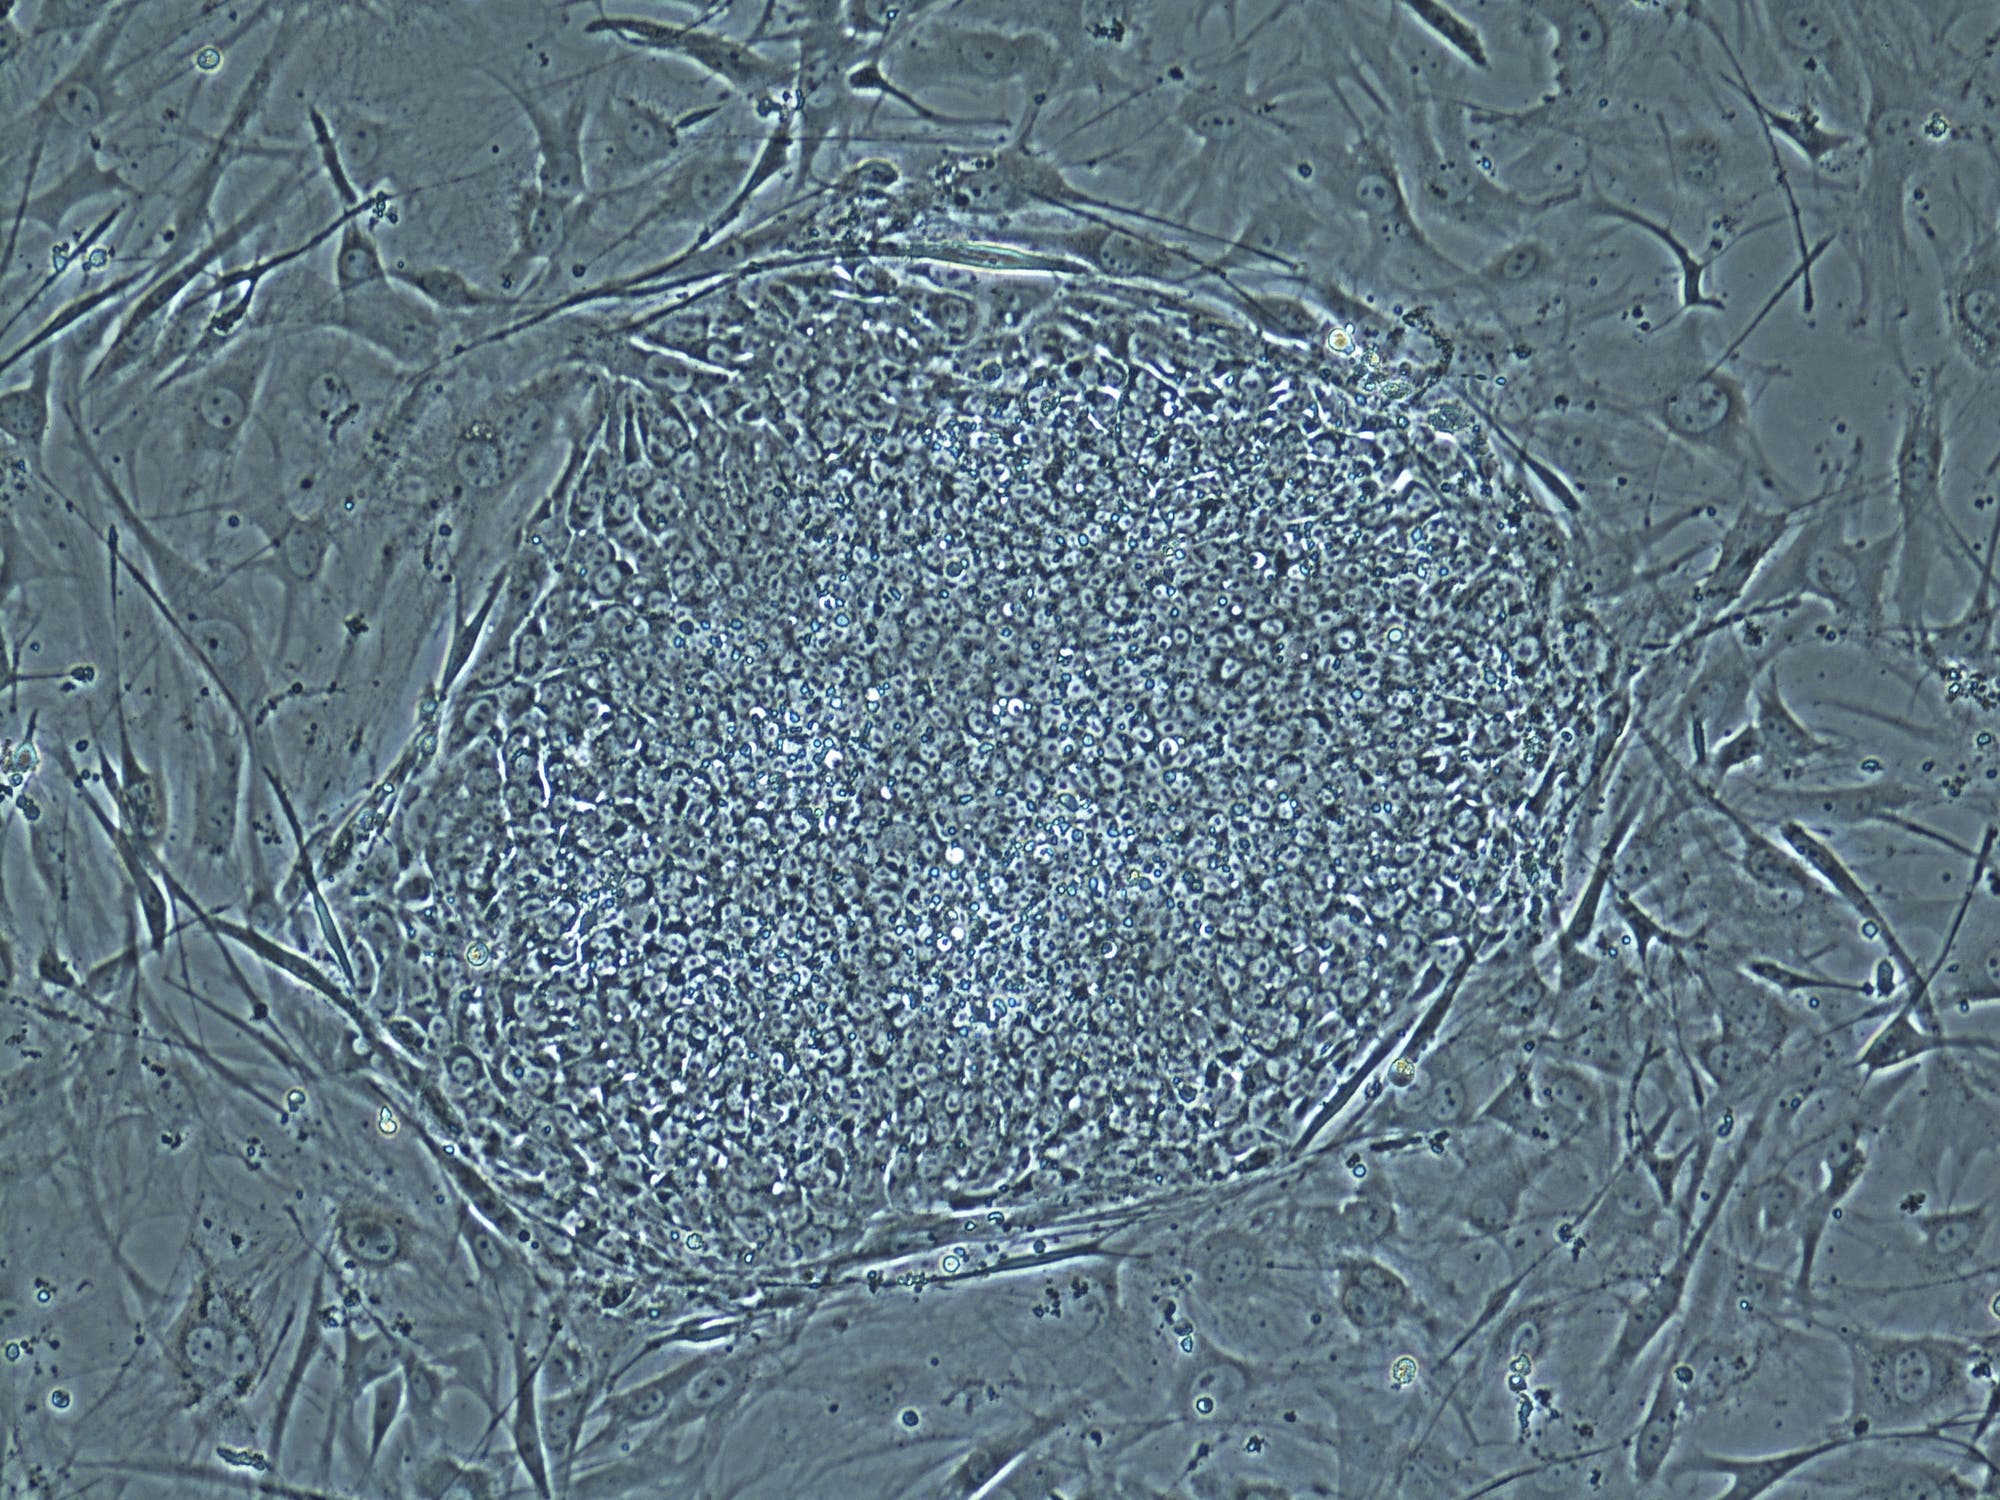 Stammzelllinien in der Petrischale